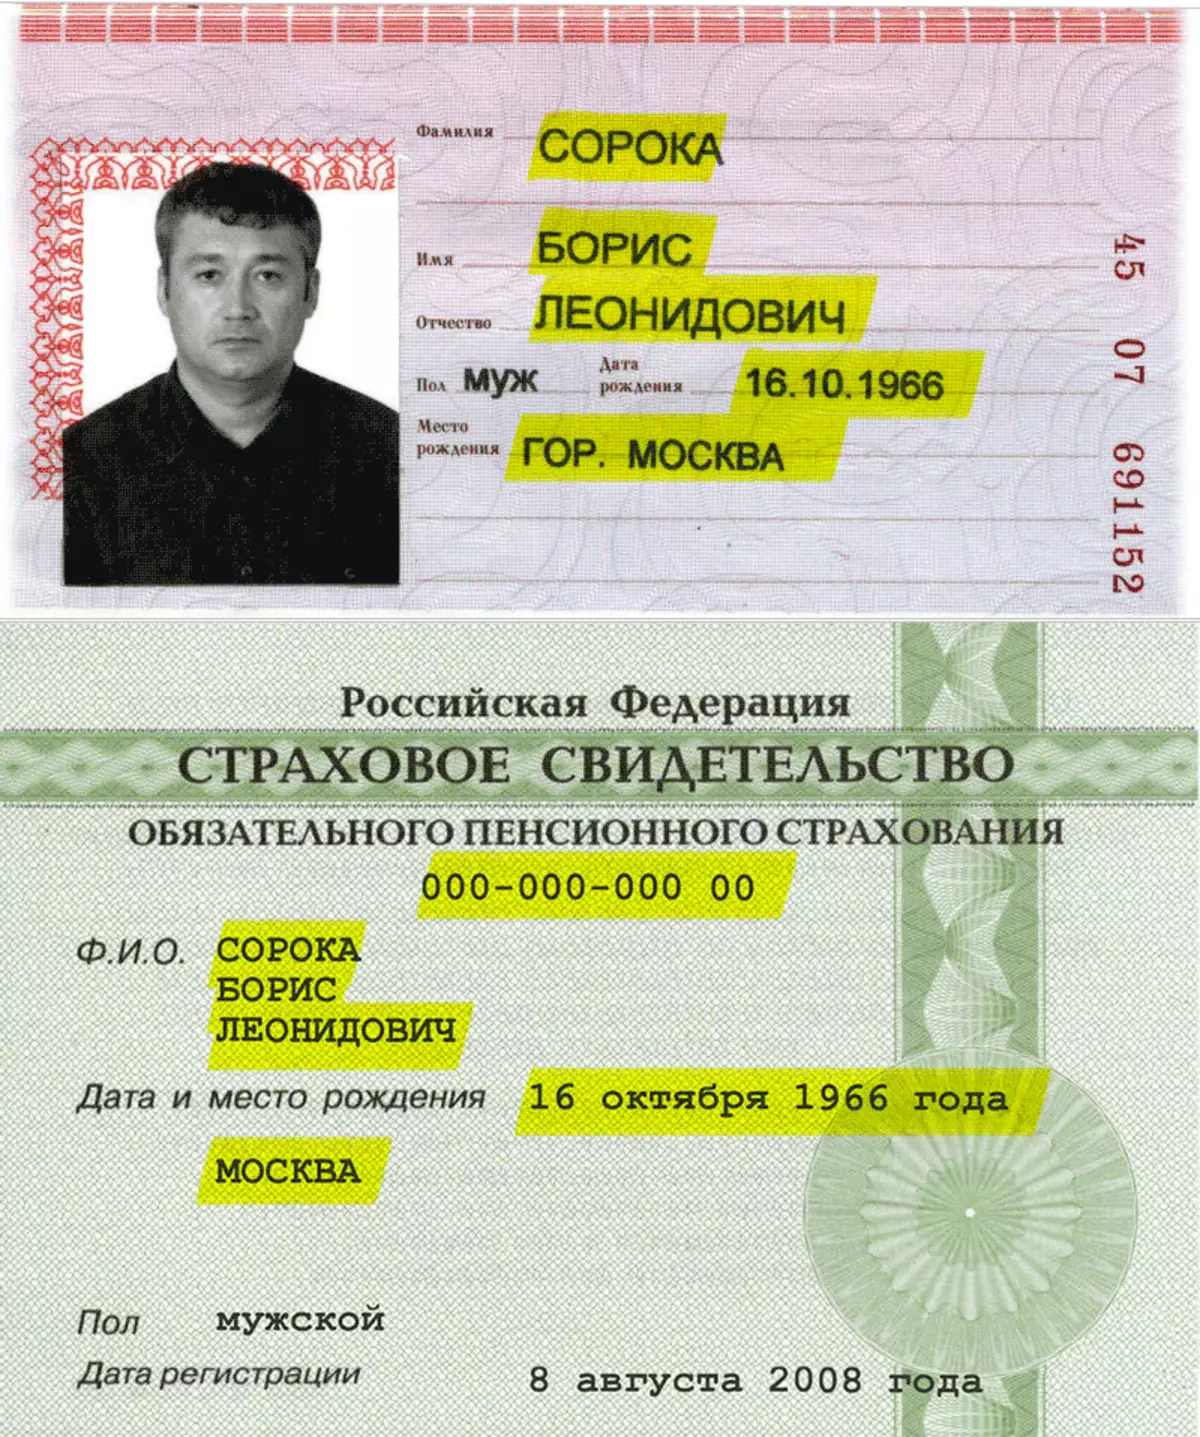 Номера СНИЛСОВ И паспортов